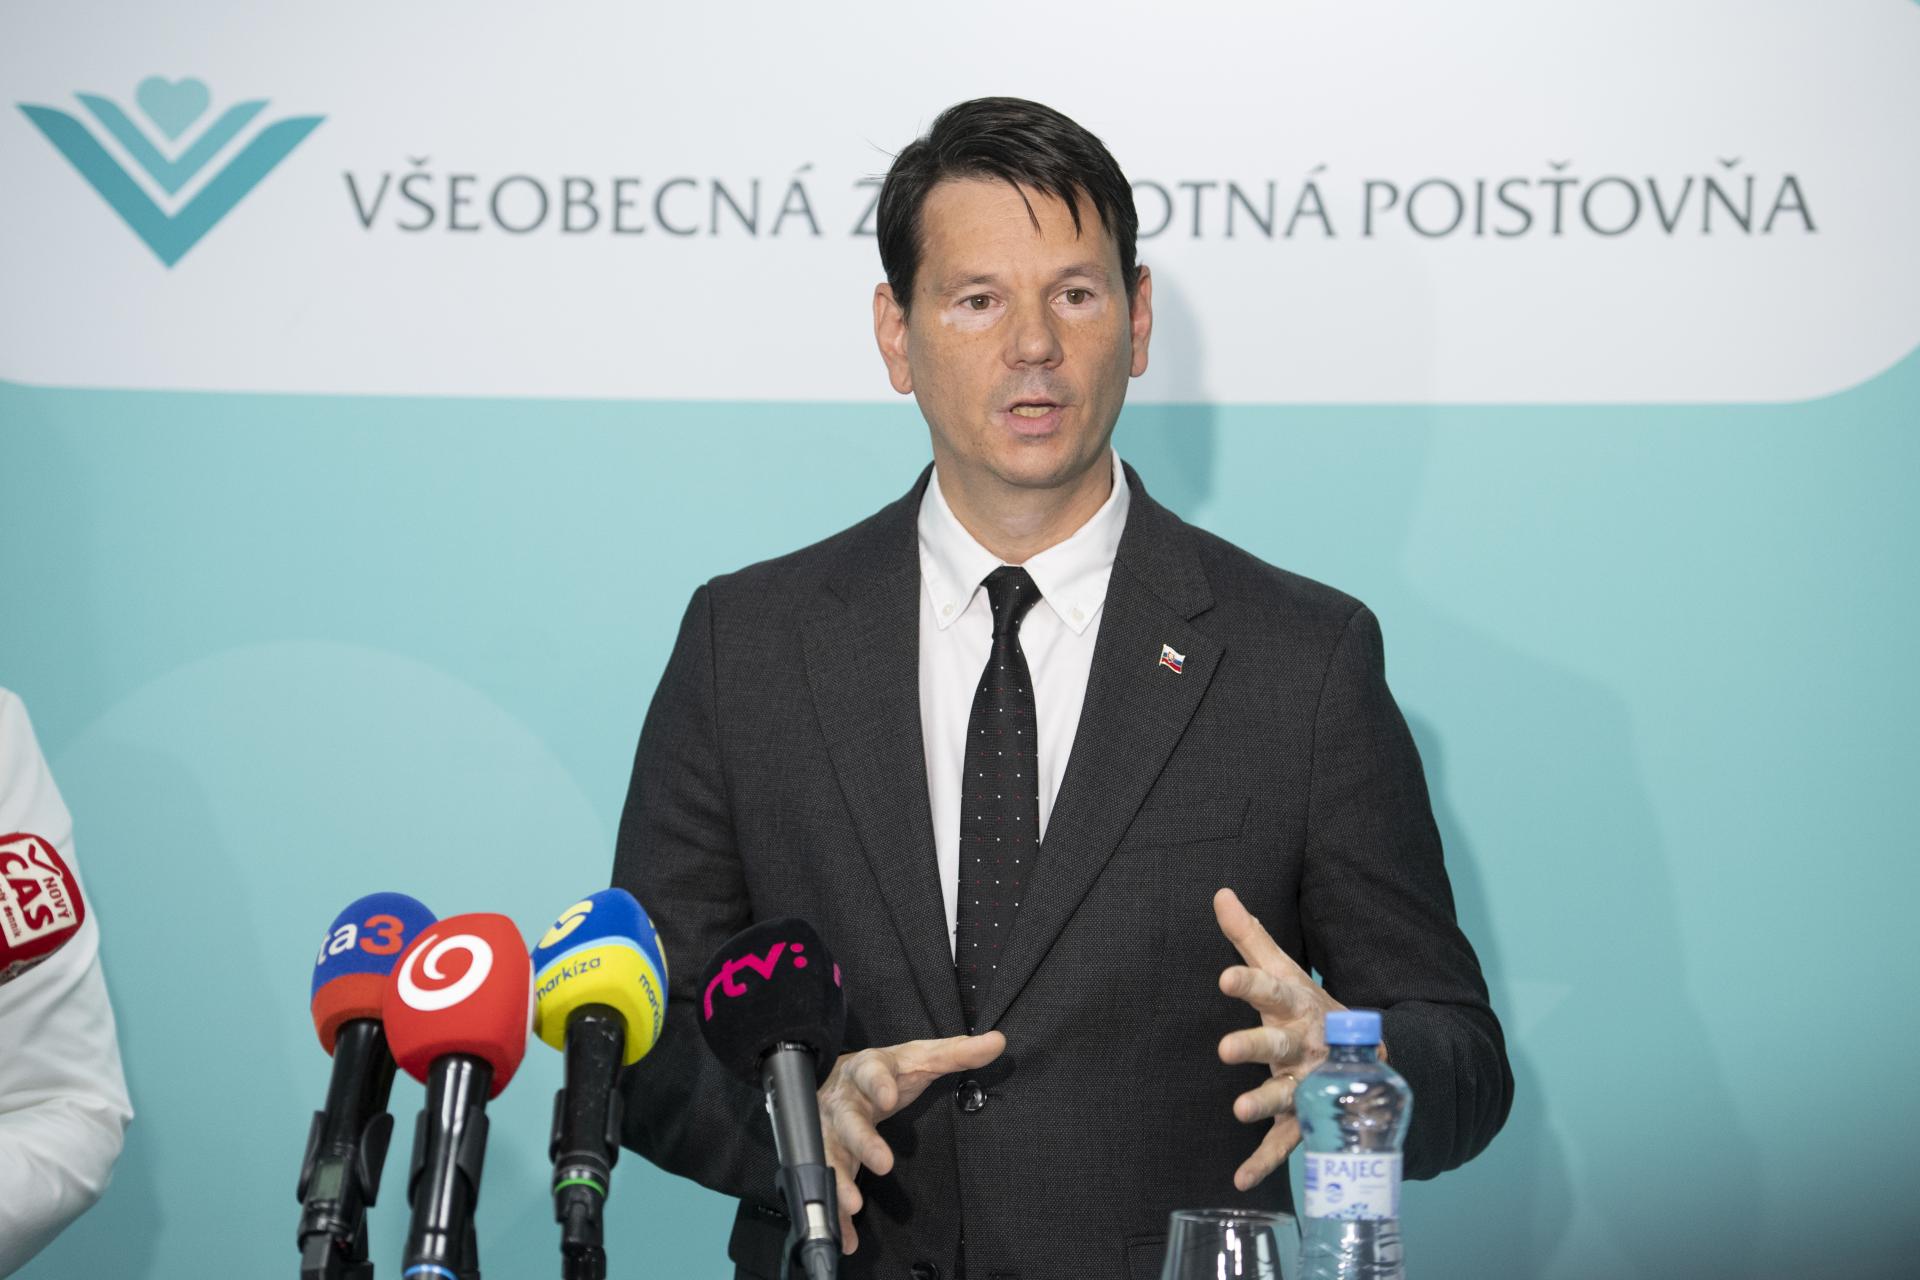 Minister Palkovič upozorňuje na nekalé prepoisťovanie, týka sa podľa neho najmä štátnej poisťovne